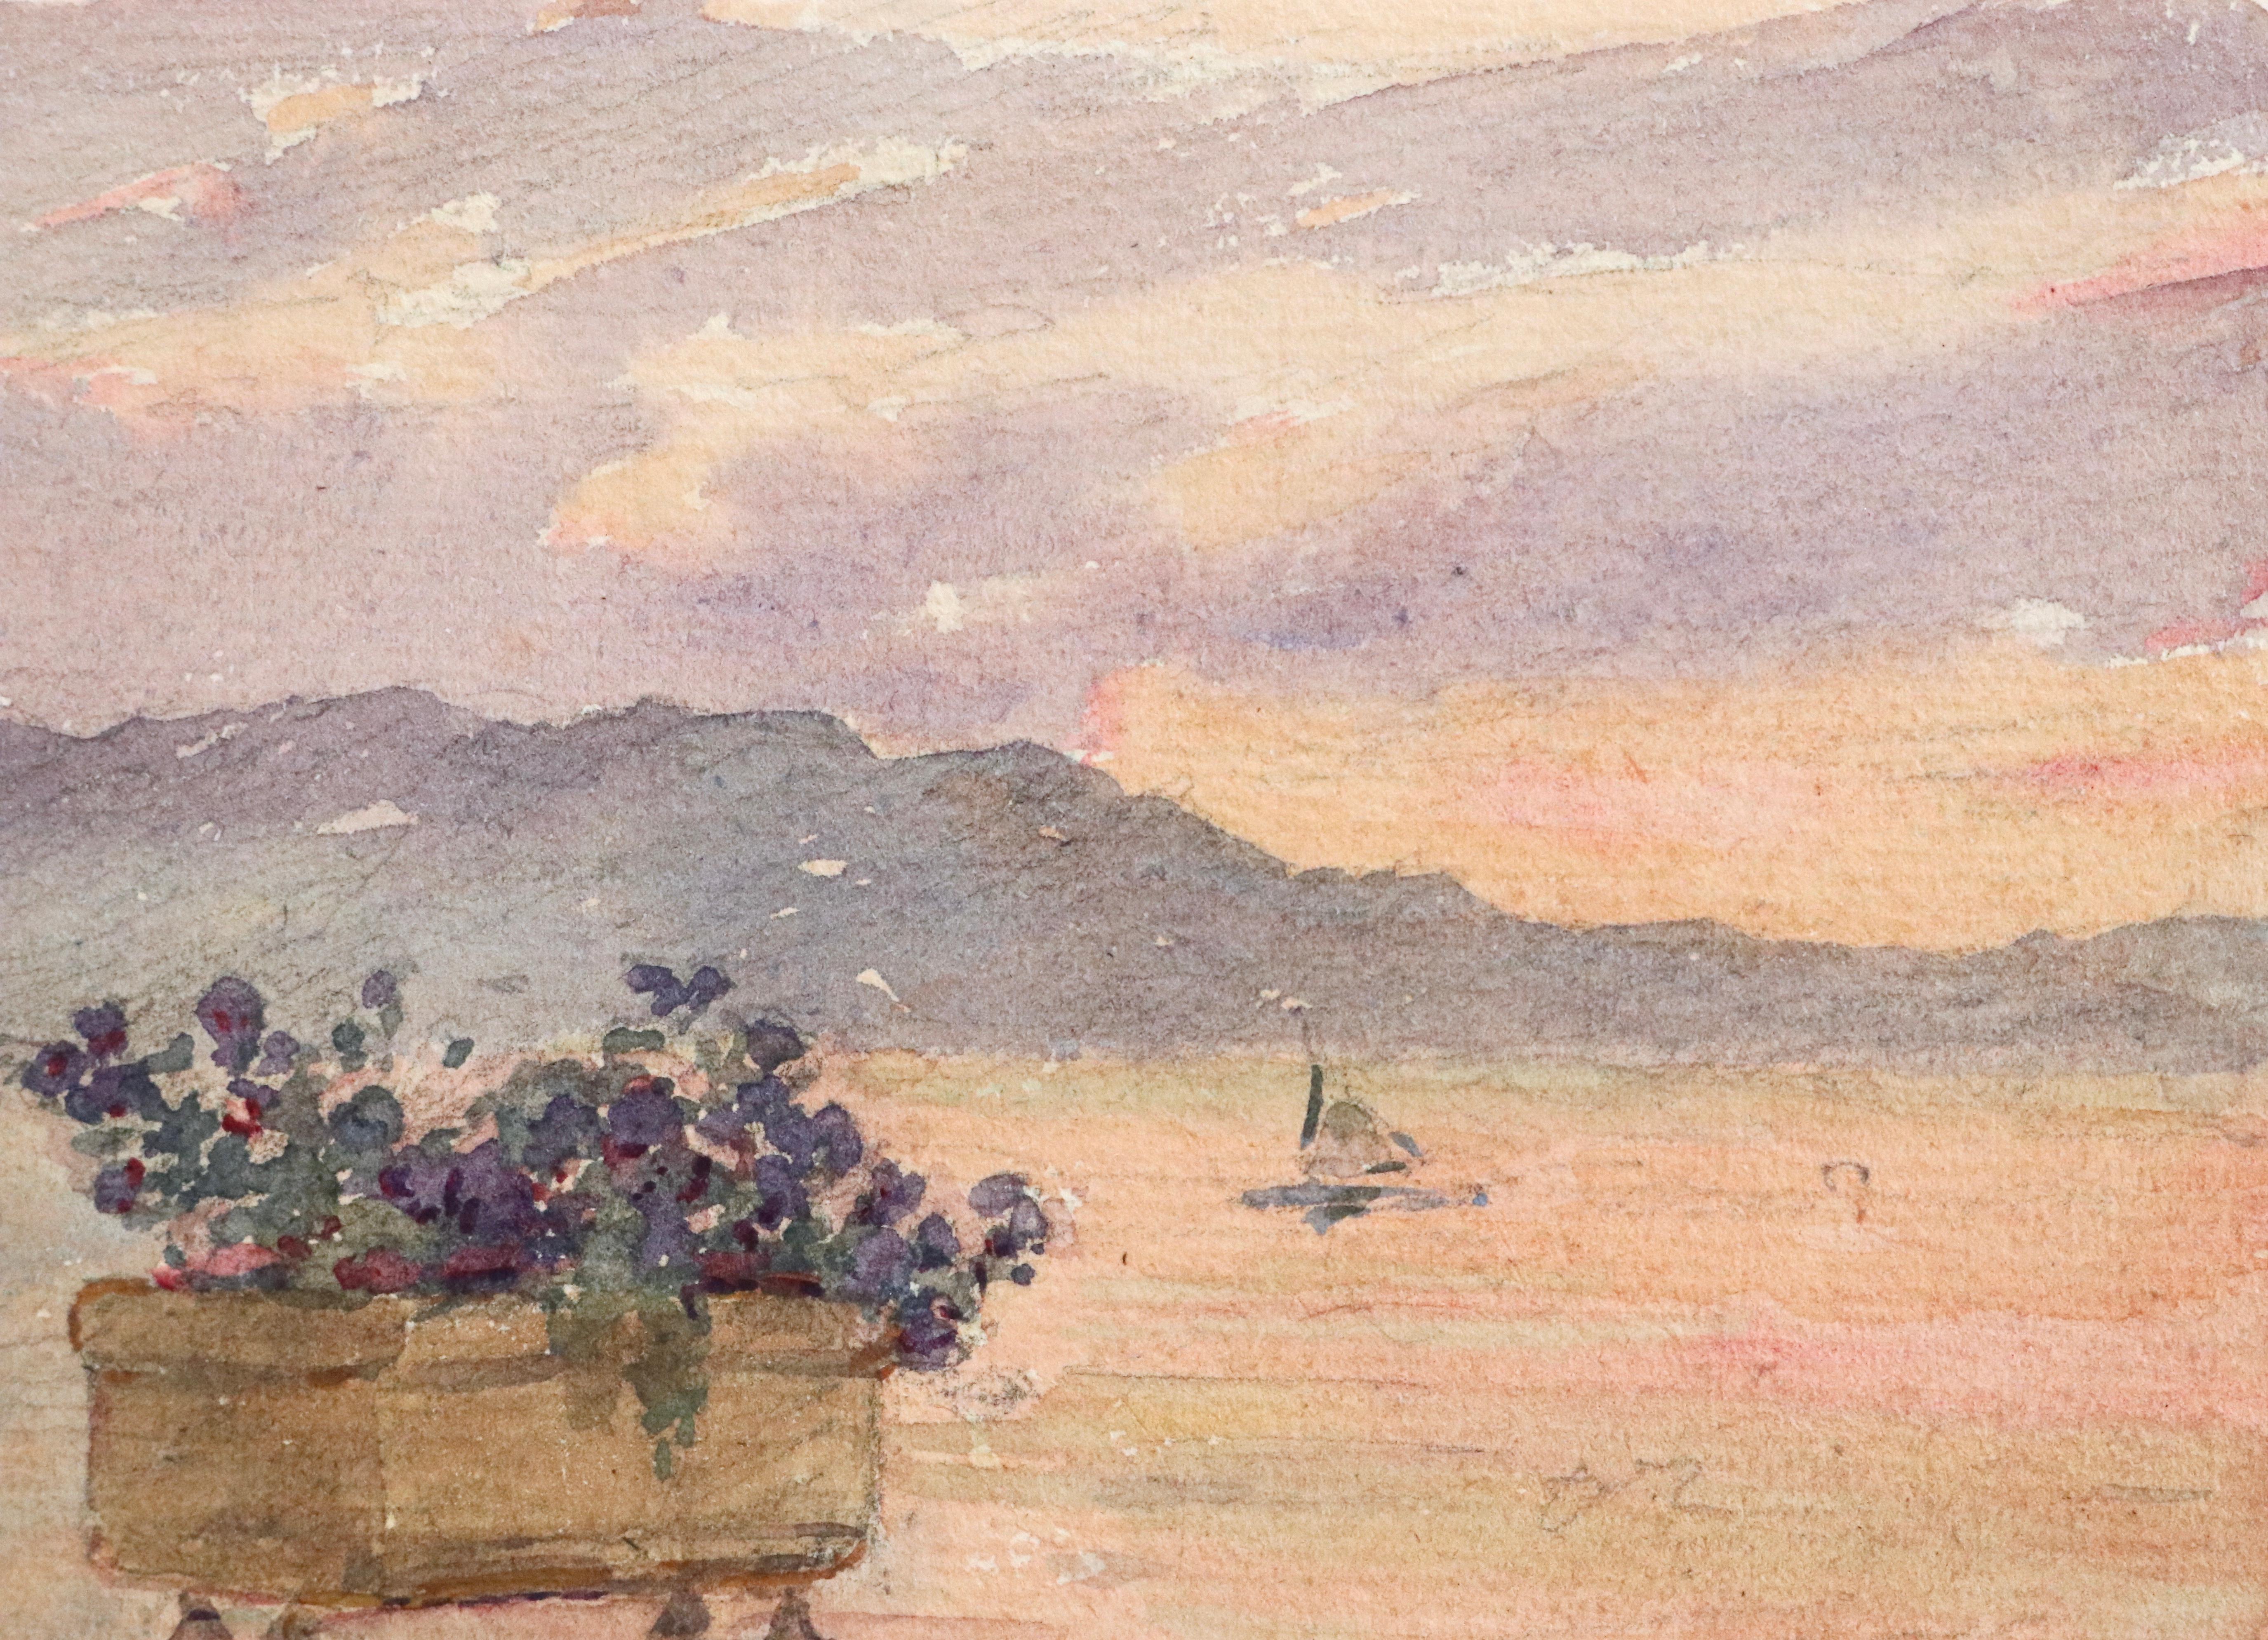 Aquarell auf Papier um 1925 von Henri Duhem, das einen Blick auf das Meer von der Promenade in Juan les Pins an der französischen Riviera zeigt. Ein Blumenkasten mit violetten Blumen im Vordergrund und ein Boot, das auf dem Wasser fährt, das durch